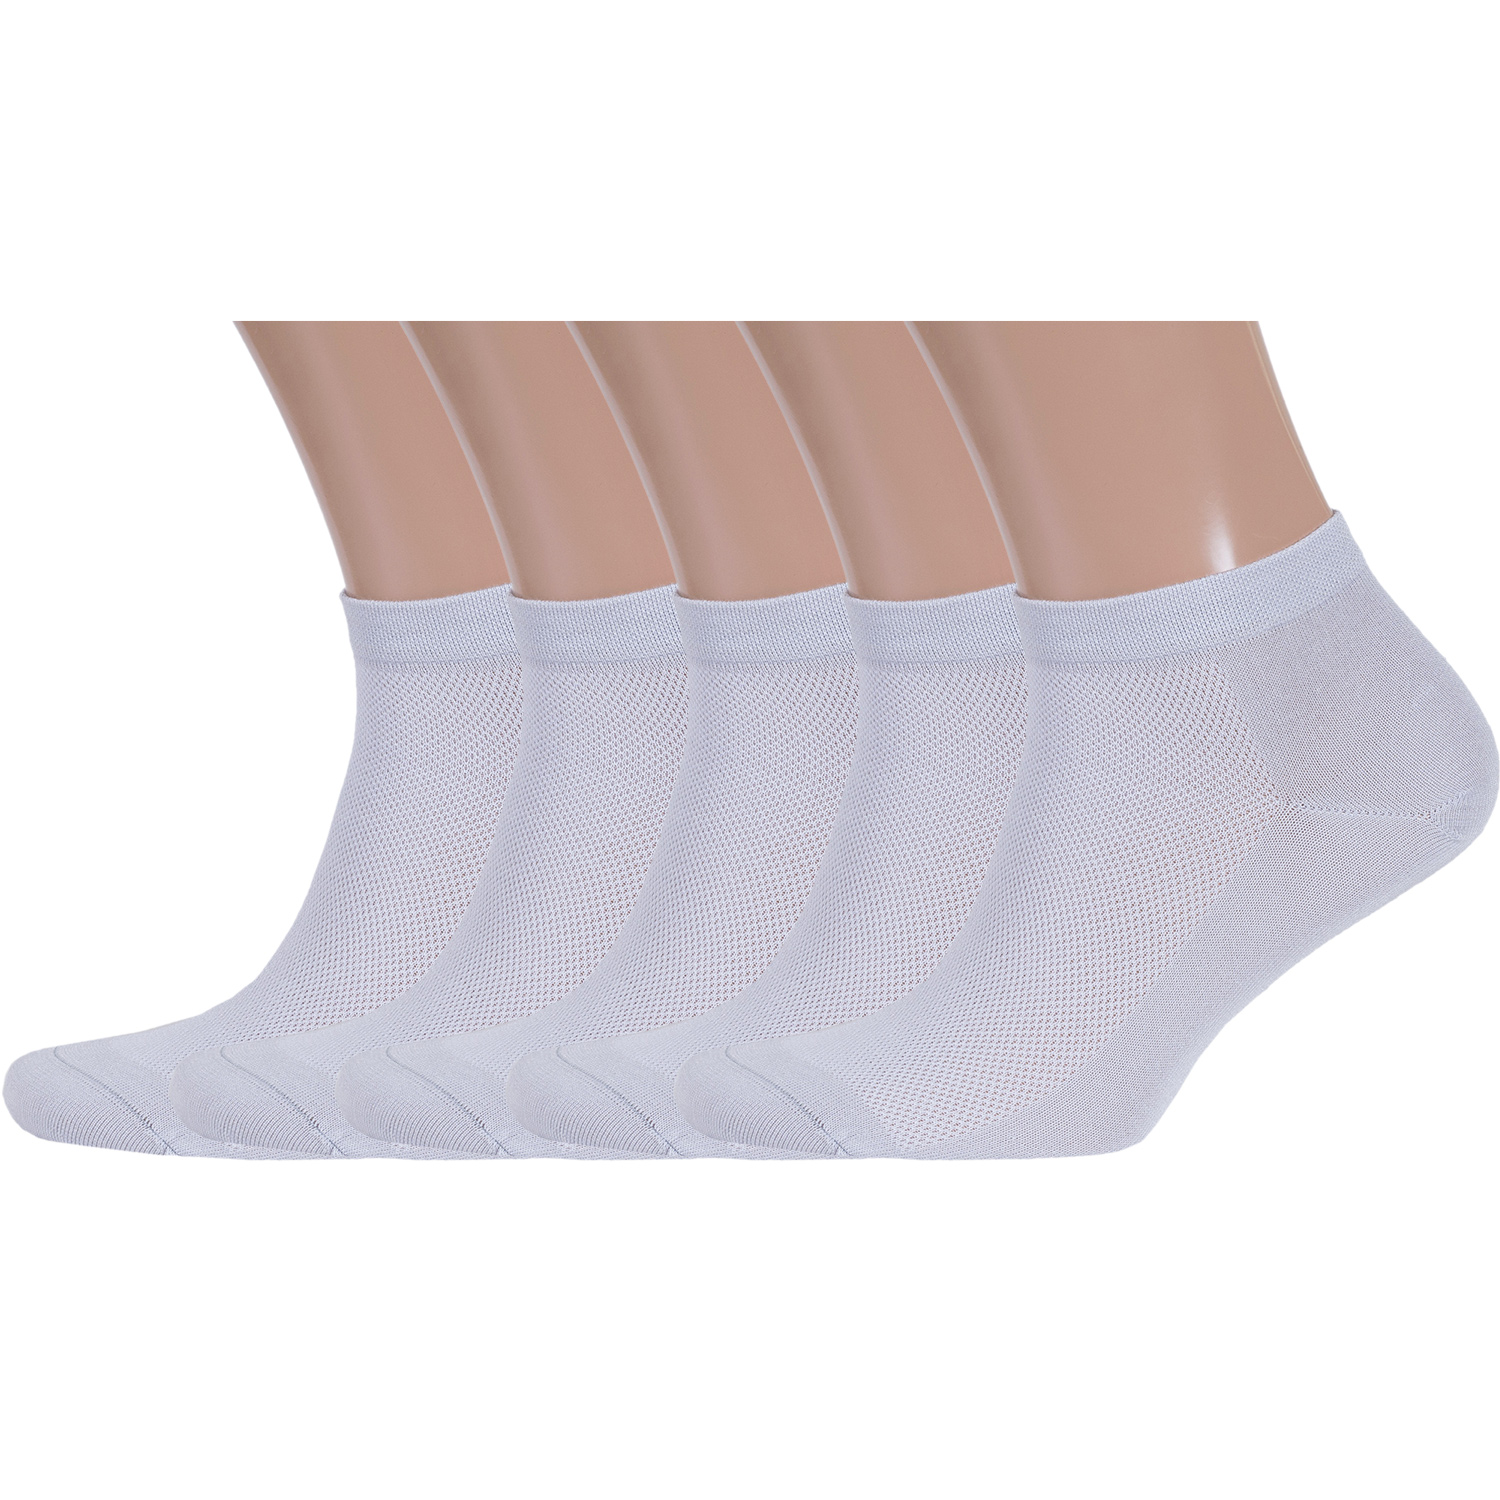 Комплект носков мужских Rusocks серых